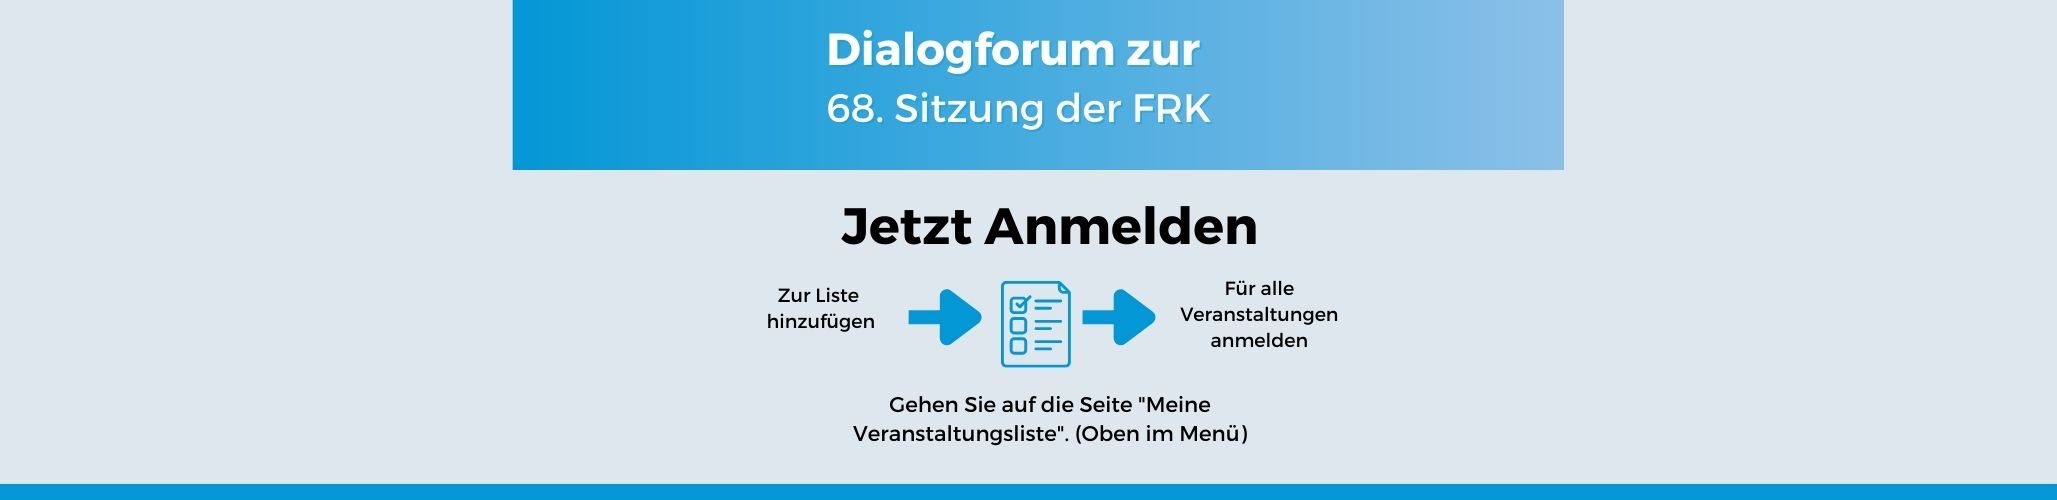 Dialogforum 86. Sitzung der FRK - Anmeldebanner